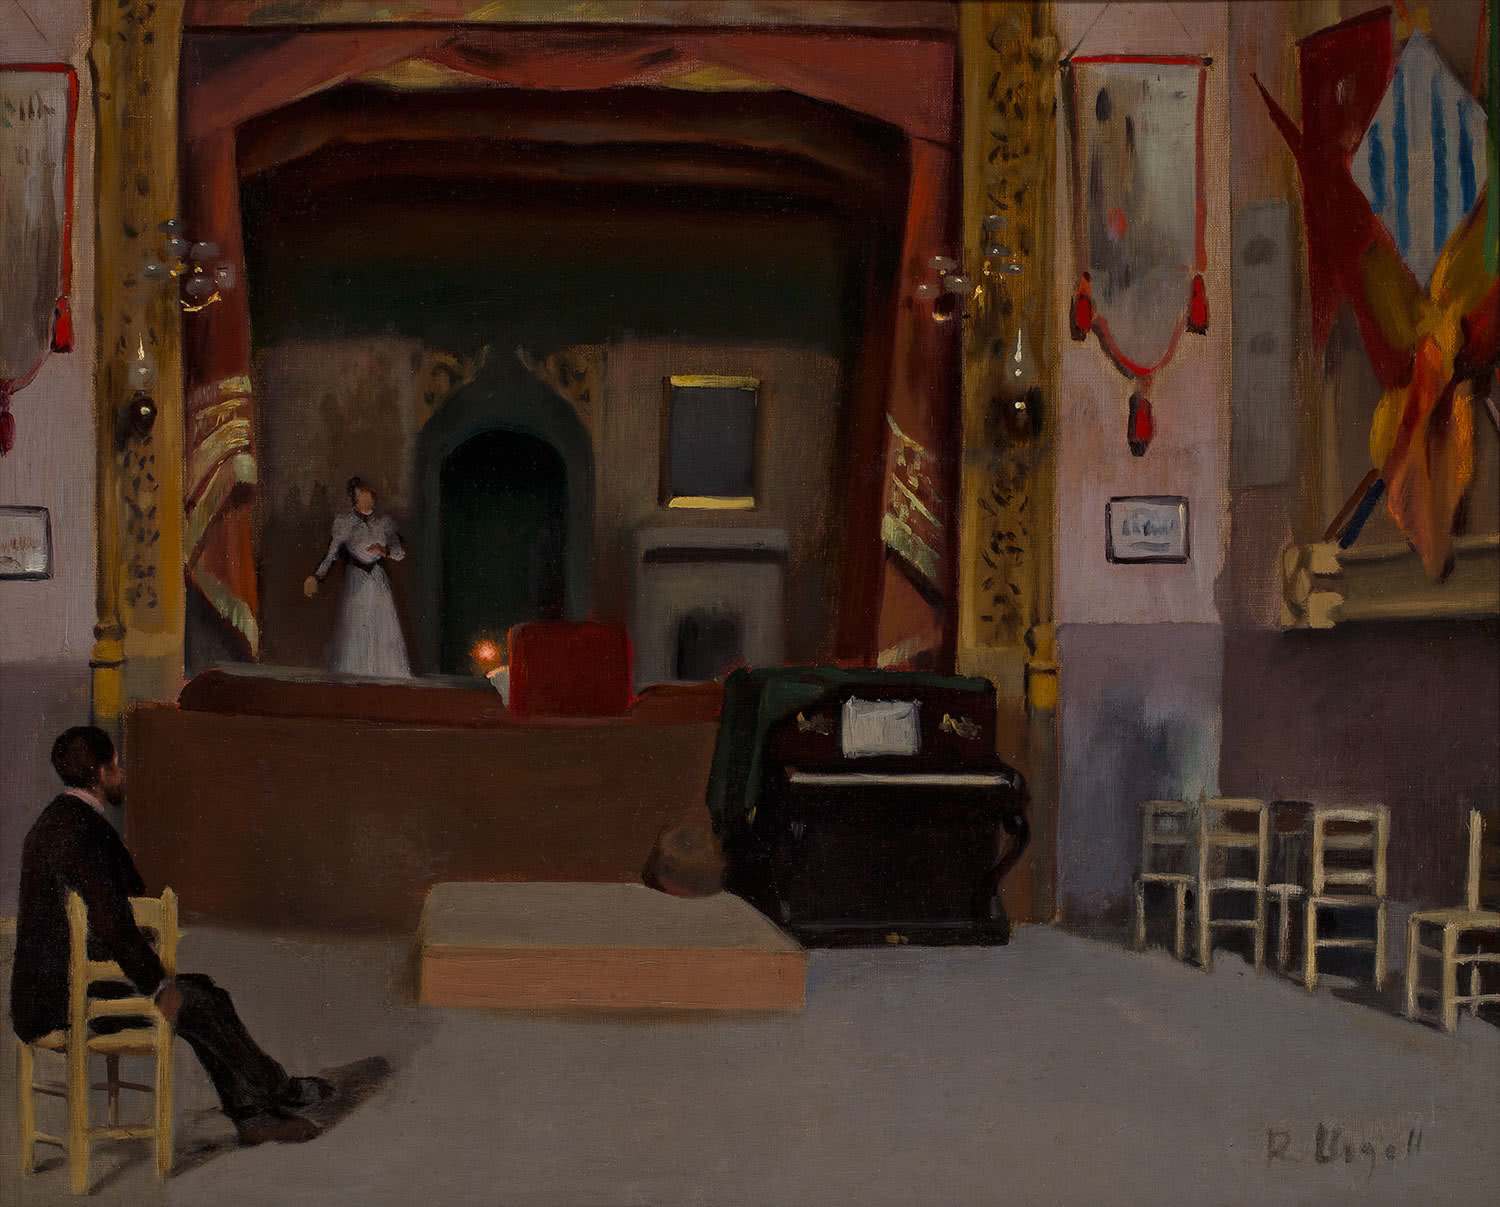 Ricard Urgell. Barcelona 1874–1924. Audició al teatre Gayarre, c. 1905-1910. Oli sobre tela. 51,5 x 62 cm.